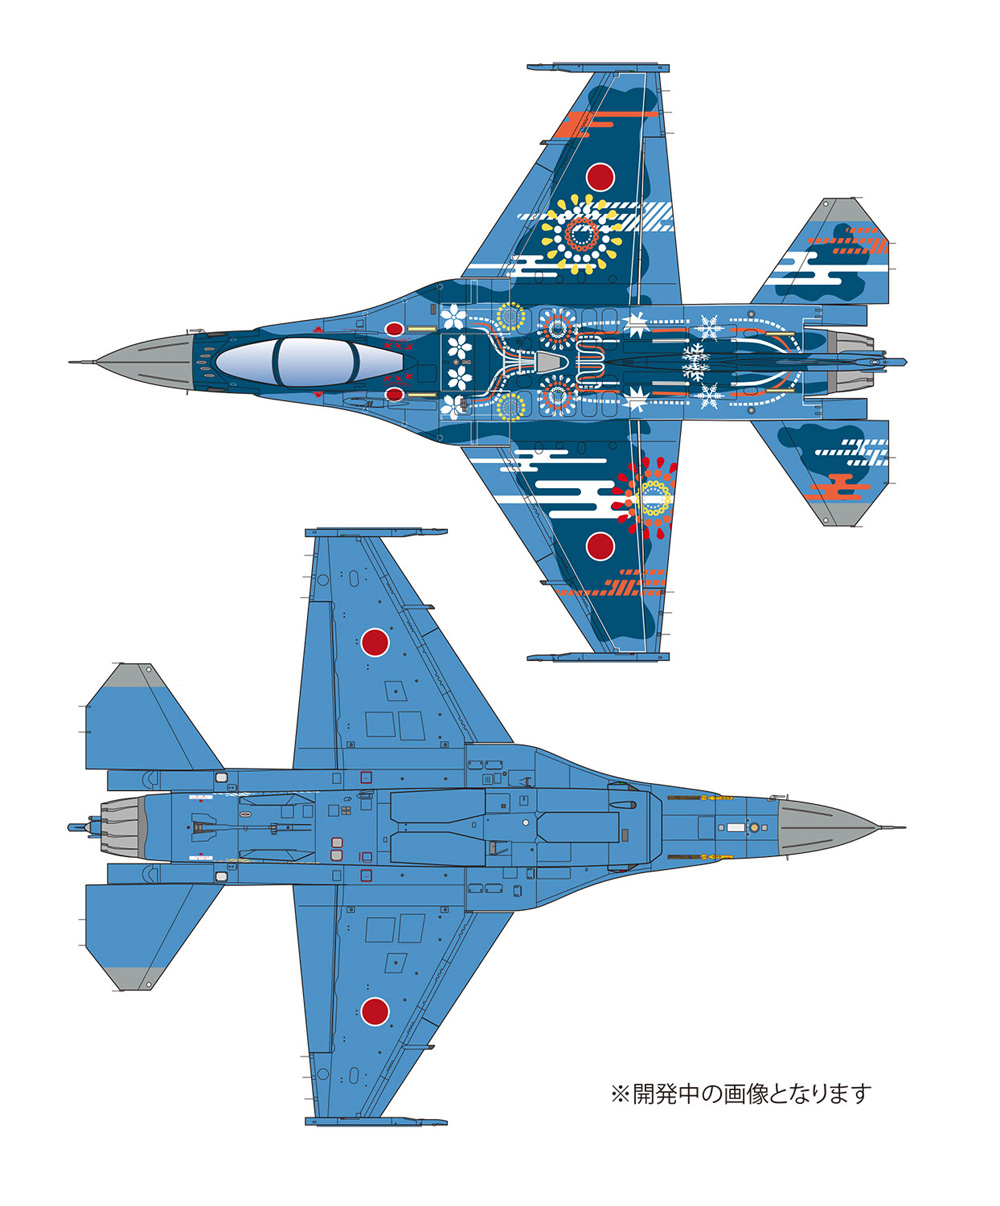 航空自衛隊 F-2A 第3飛行隊 2019年 三沢ラストイヤー特別塗装機 プラモデル (プラッツ 1/144 自衛隊機シリーズ No.PF-053) 商品画像_2